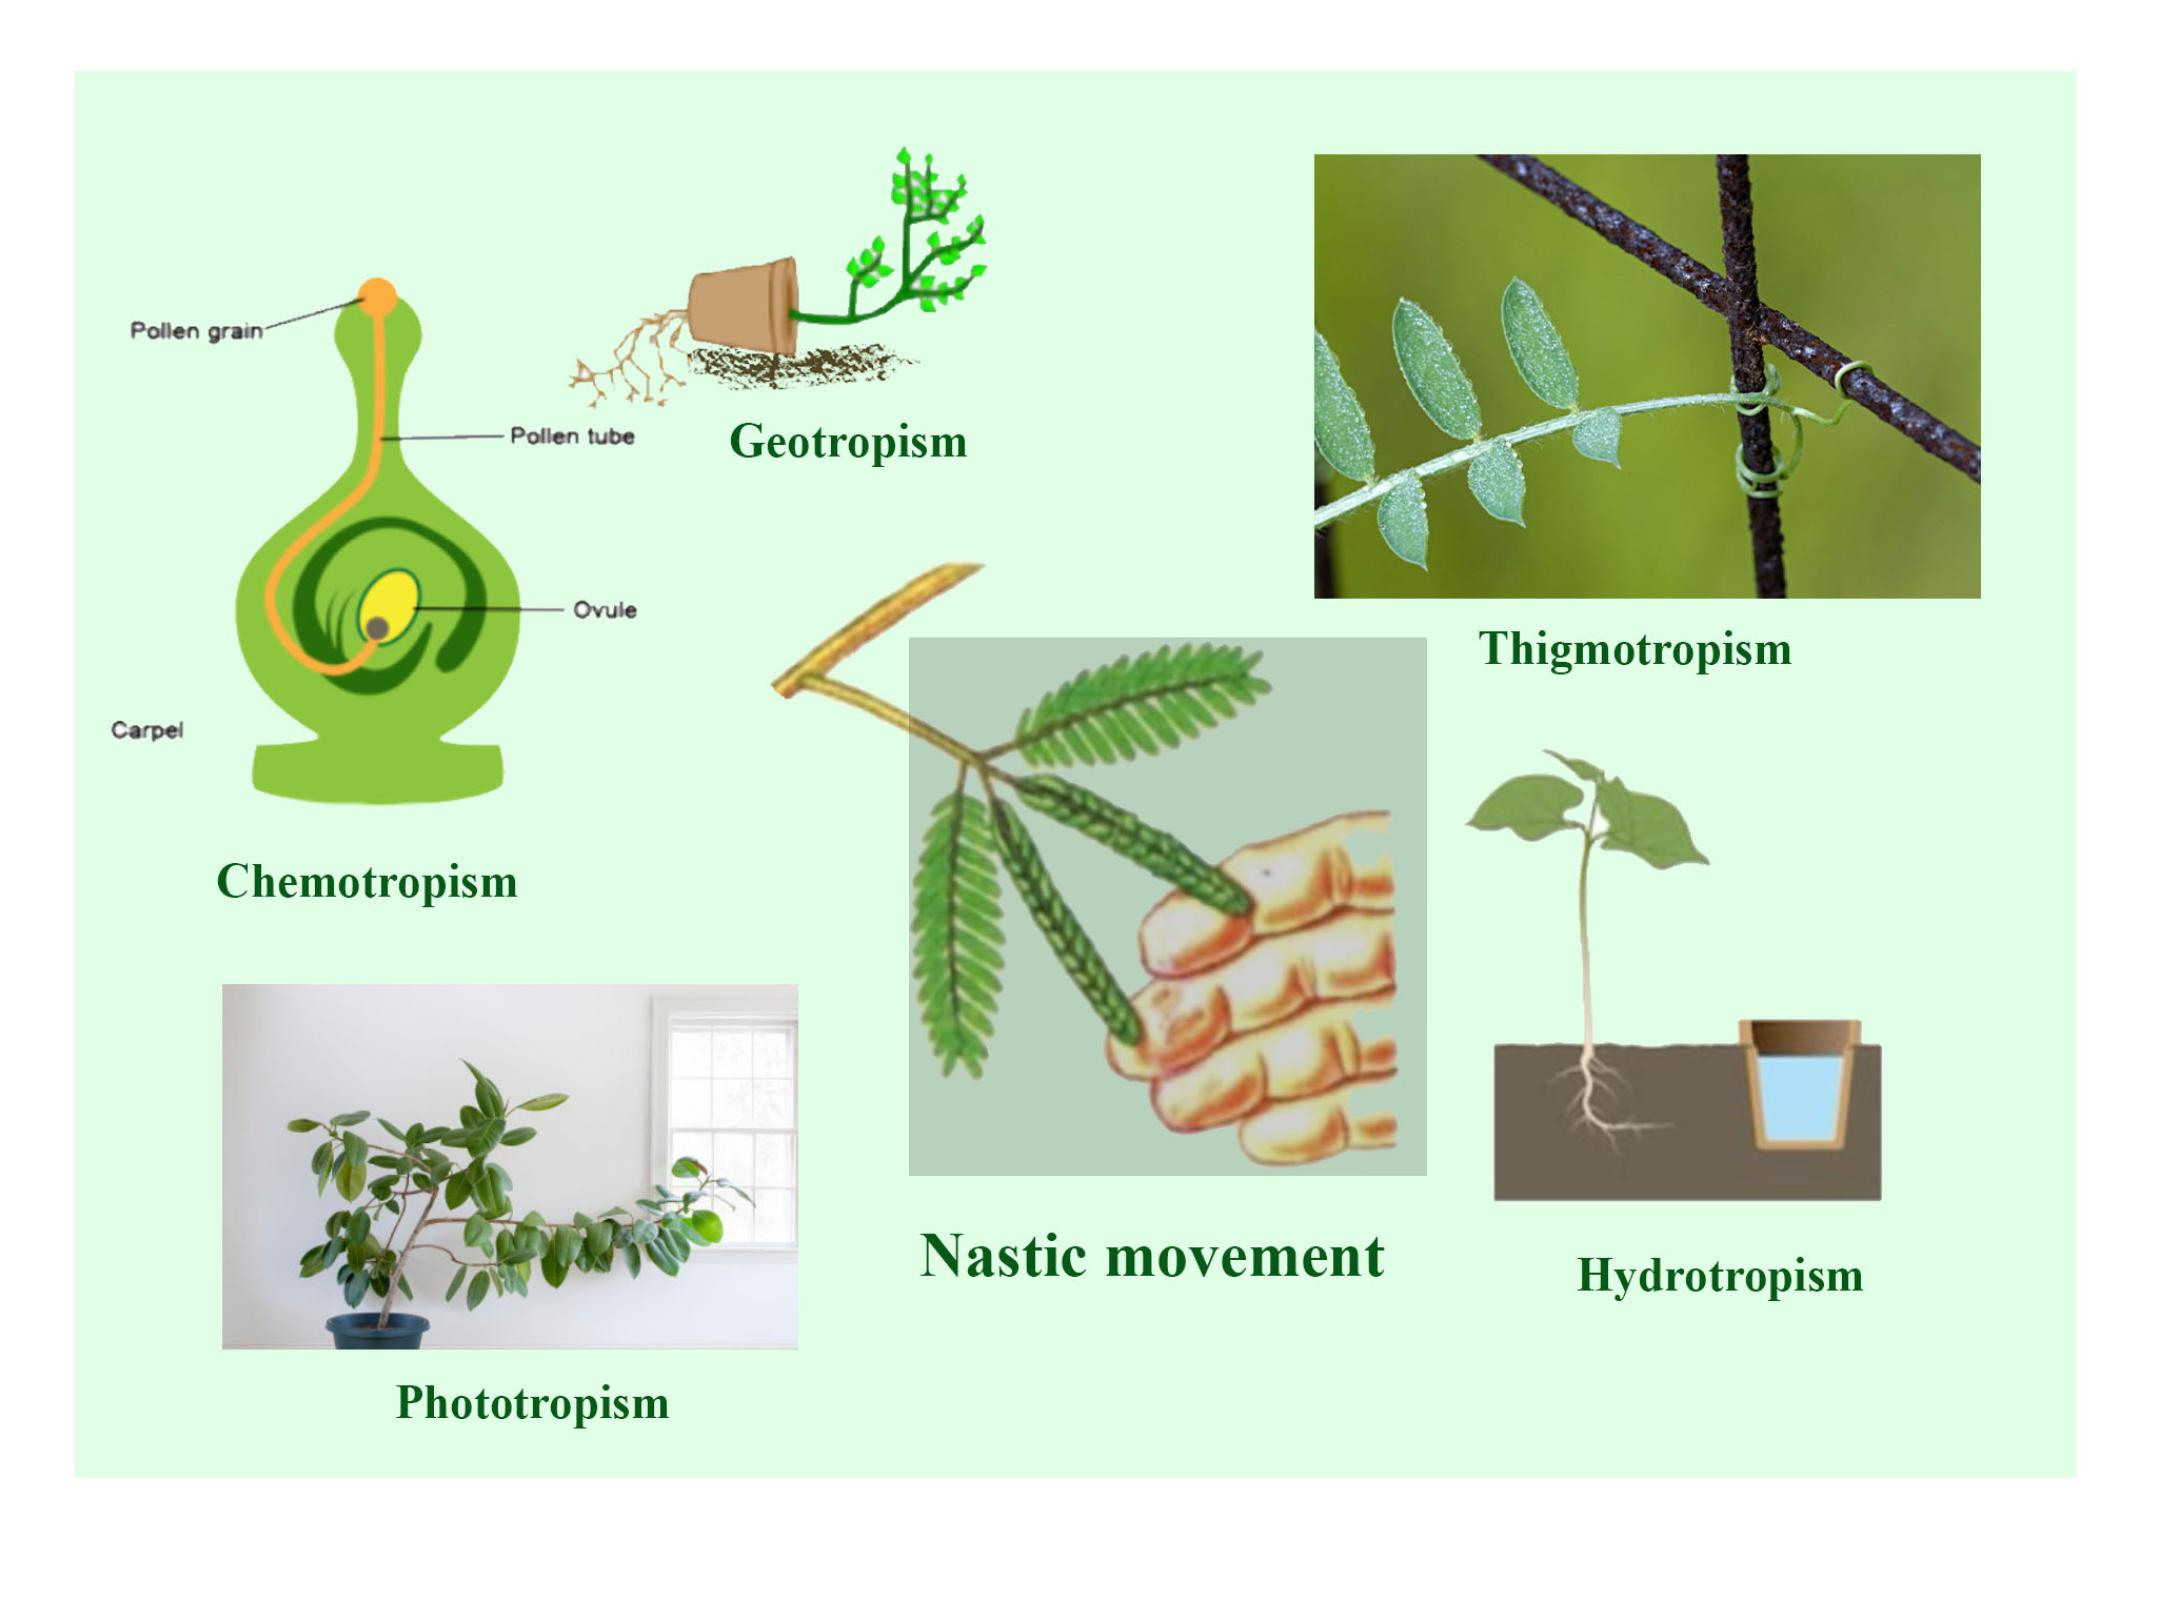 chemotropism in plants